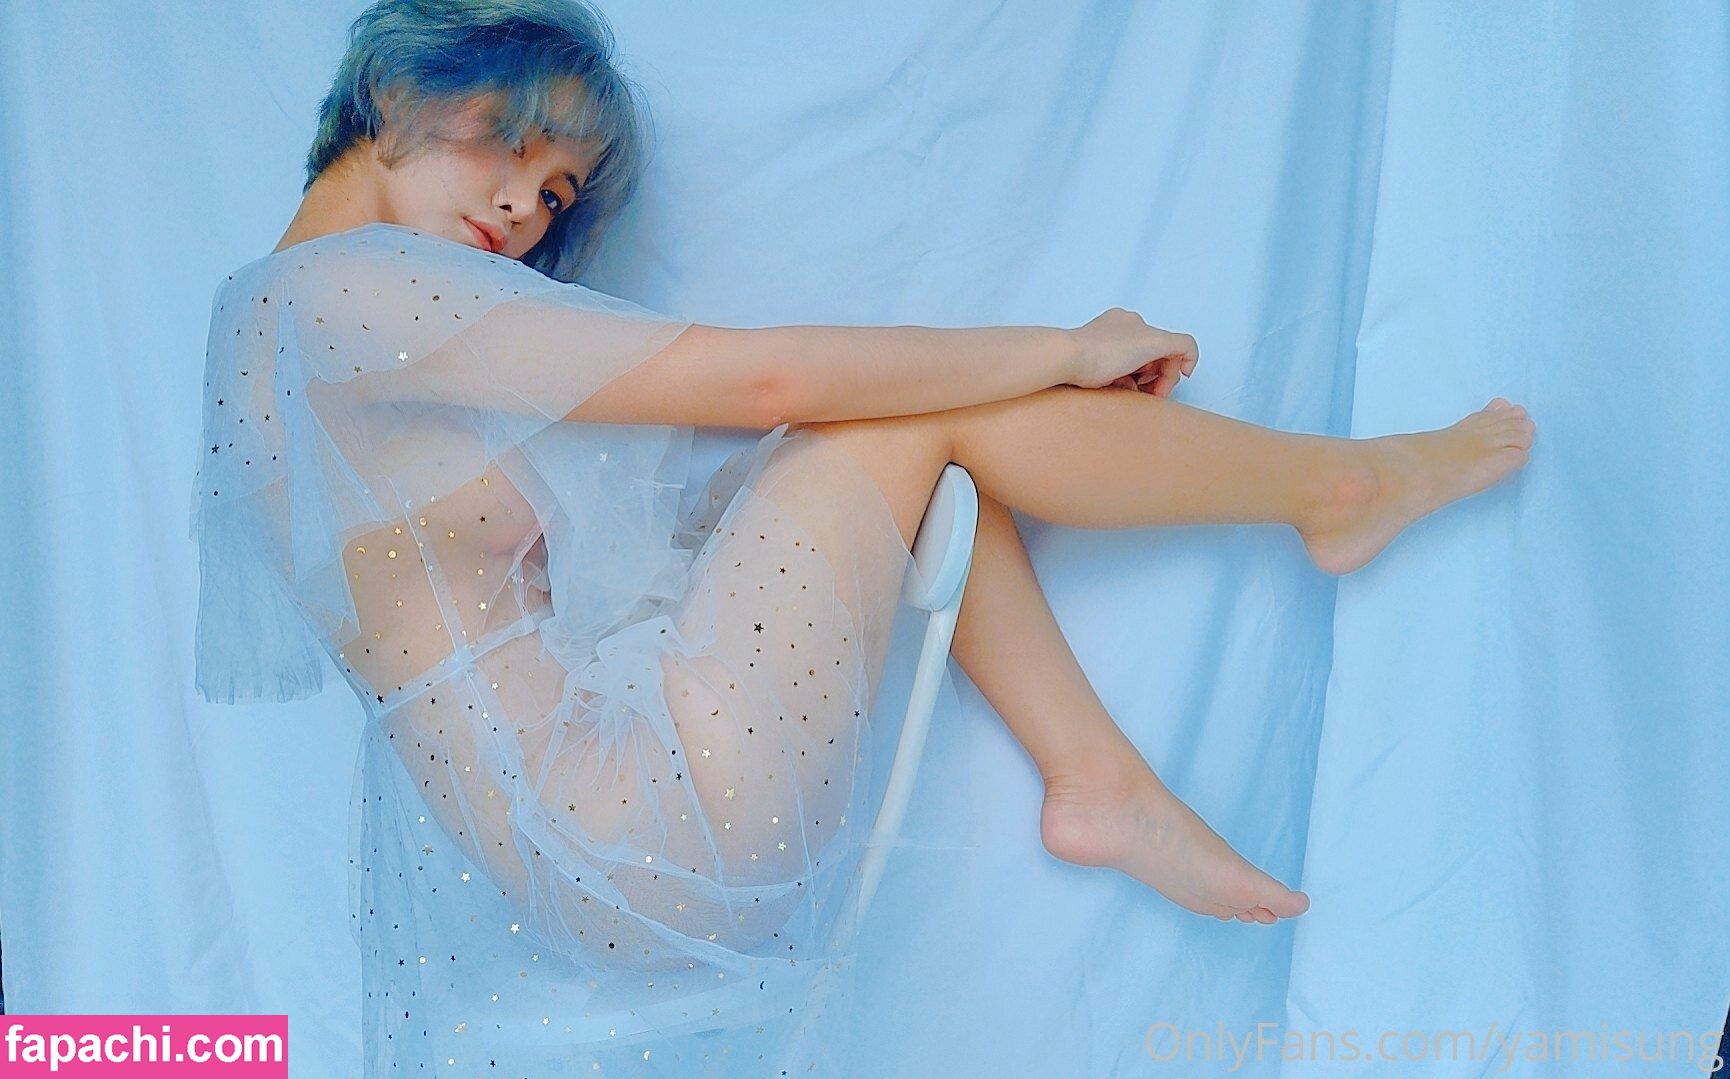 Yamisung / soyamizouka / sungyami / yami leaked nude photo #0162 from OnlyFans/Patreon